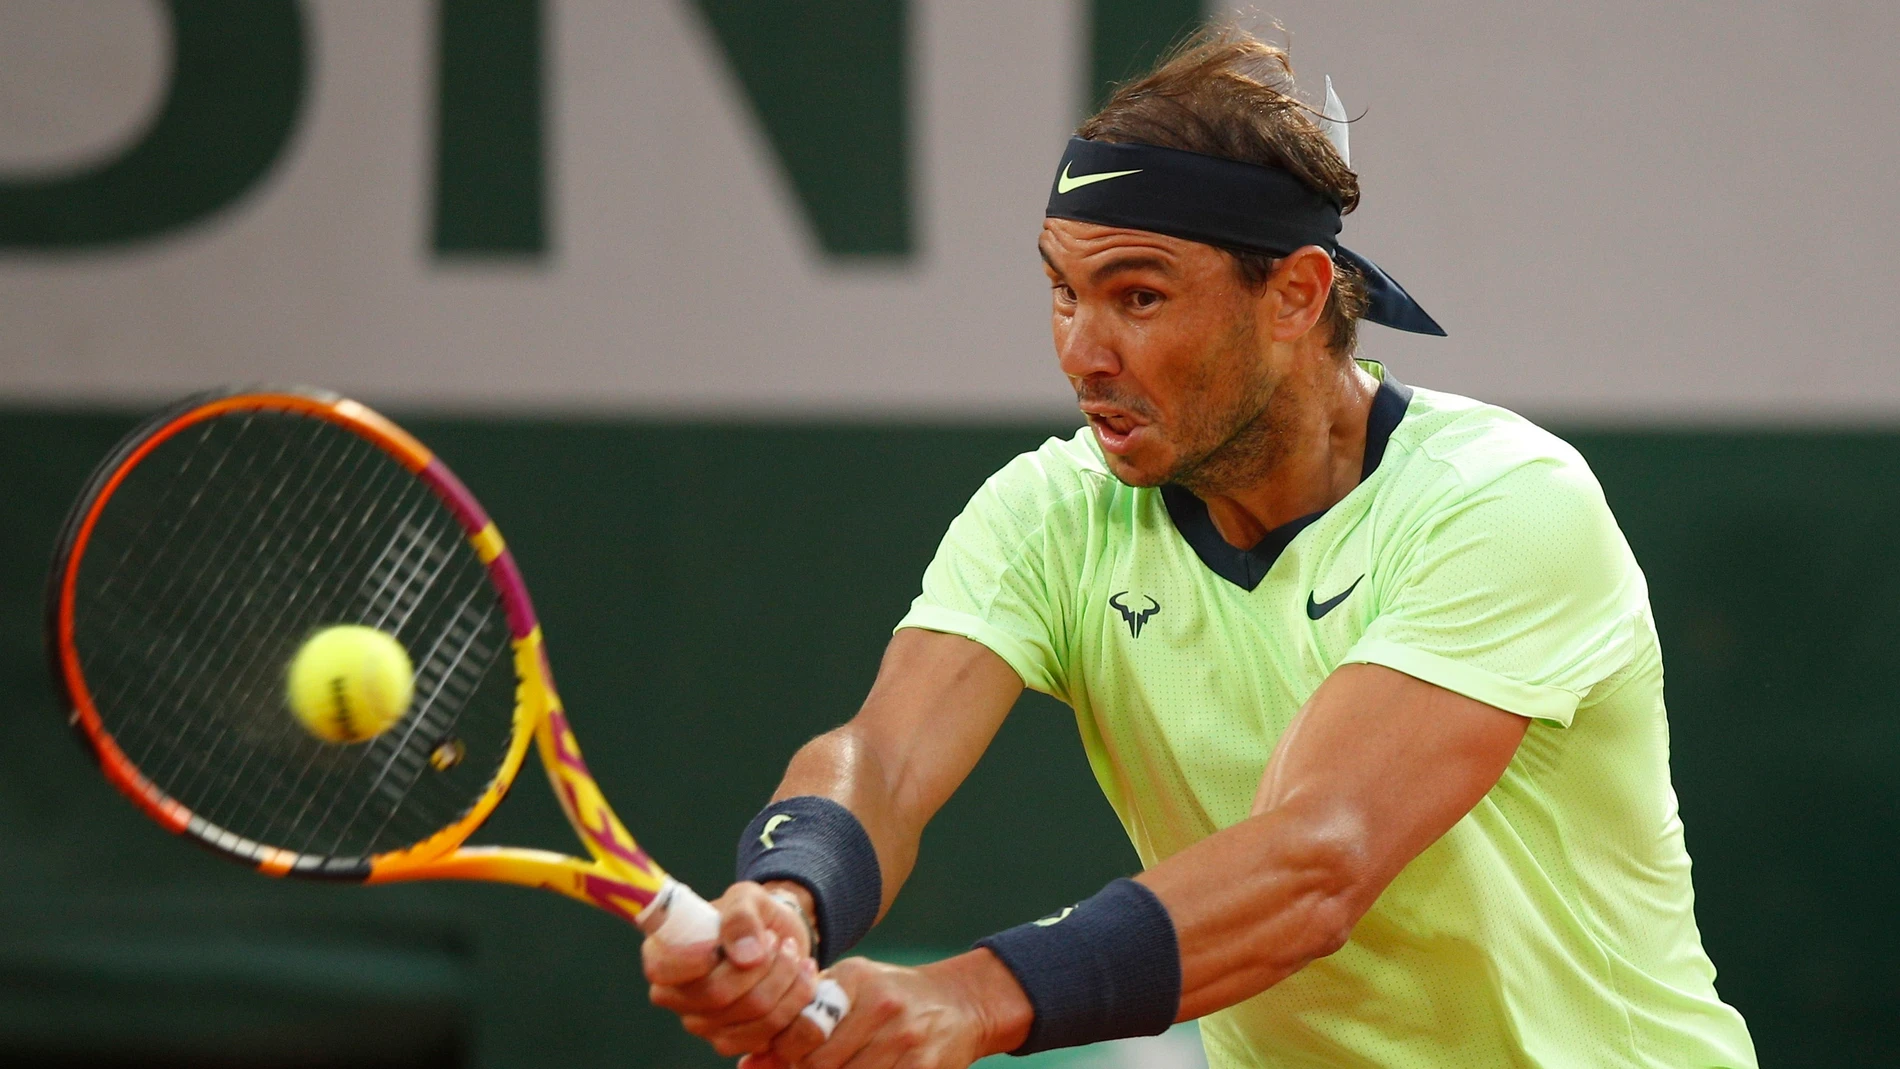 Rafa Nadal - Jannik Sinner: Horario y dónde ver el partido de tenis hoy de Roland Garros en directo